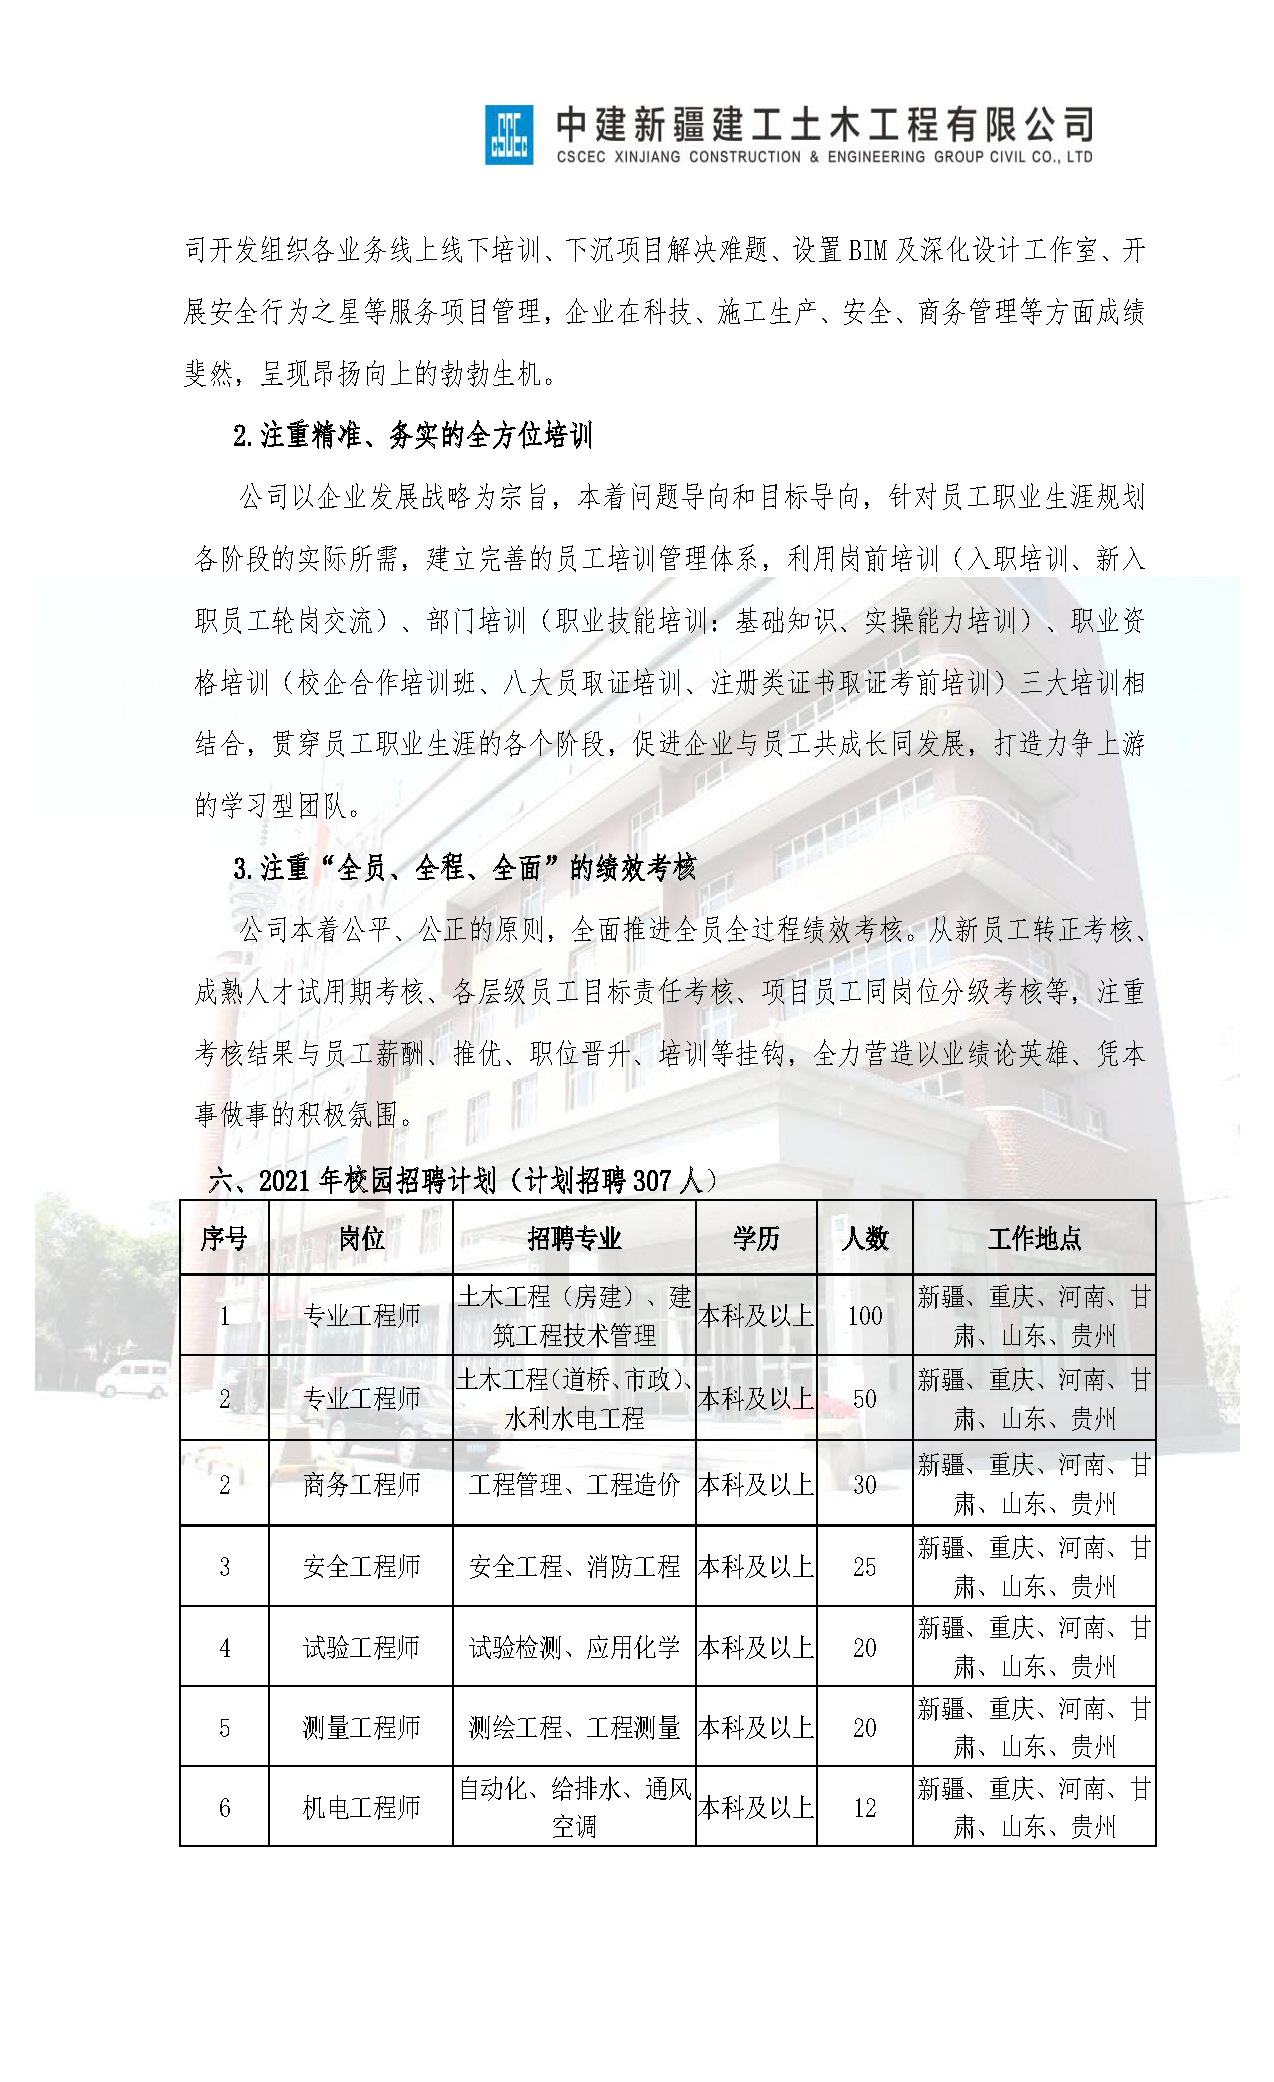 中建新疆建工土木公司2021年招聘简章_页面_4.jpg